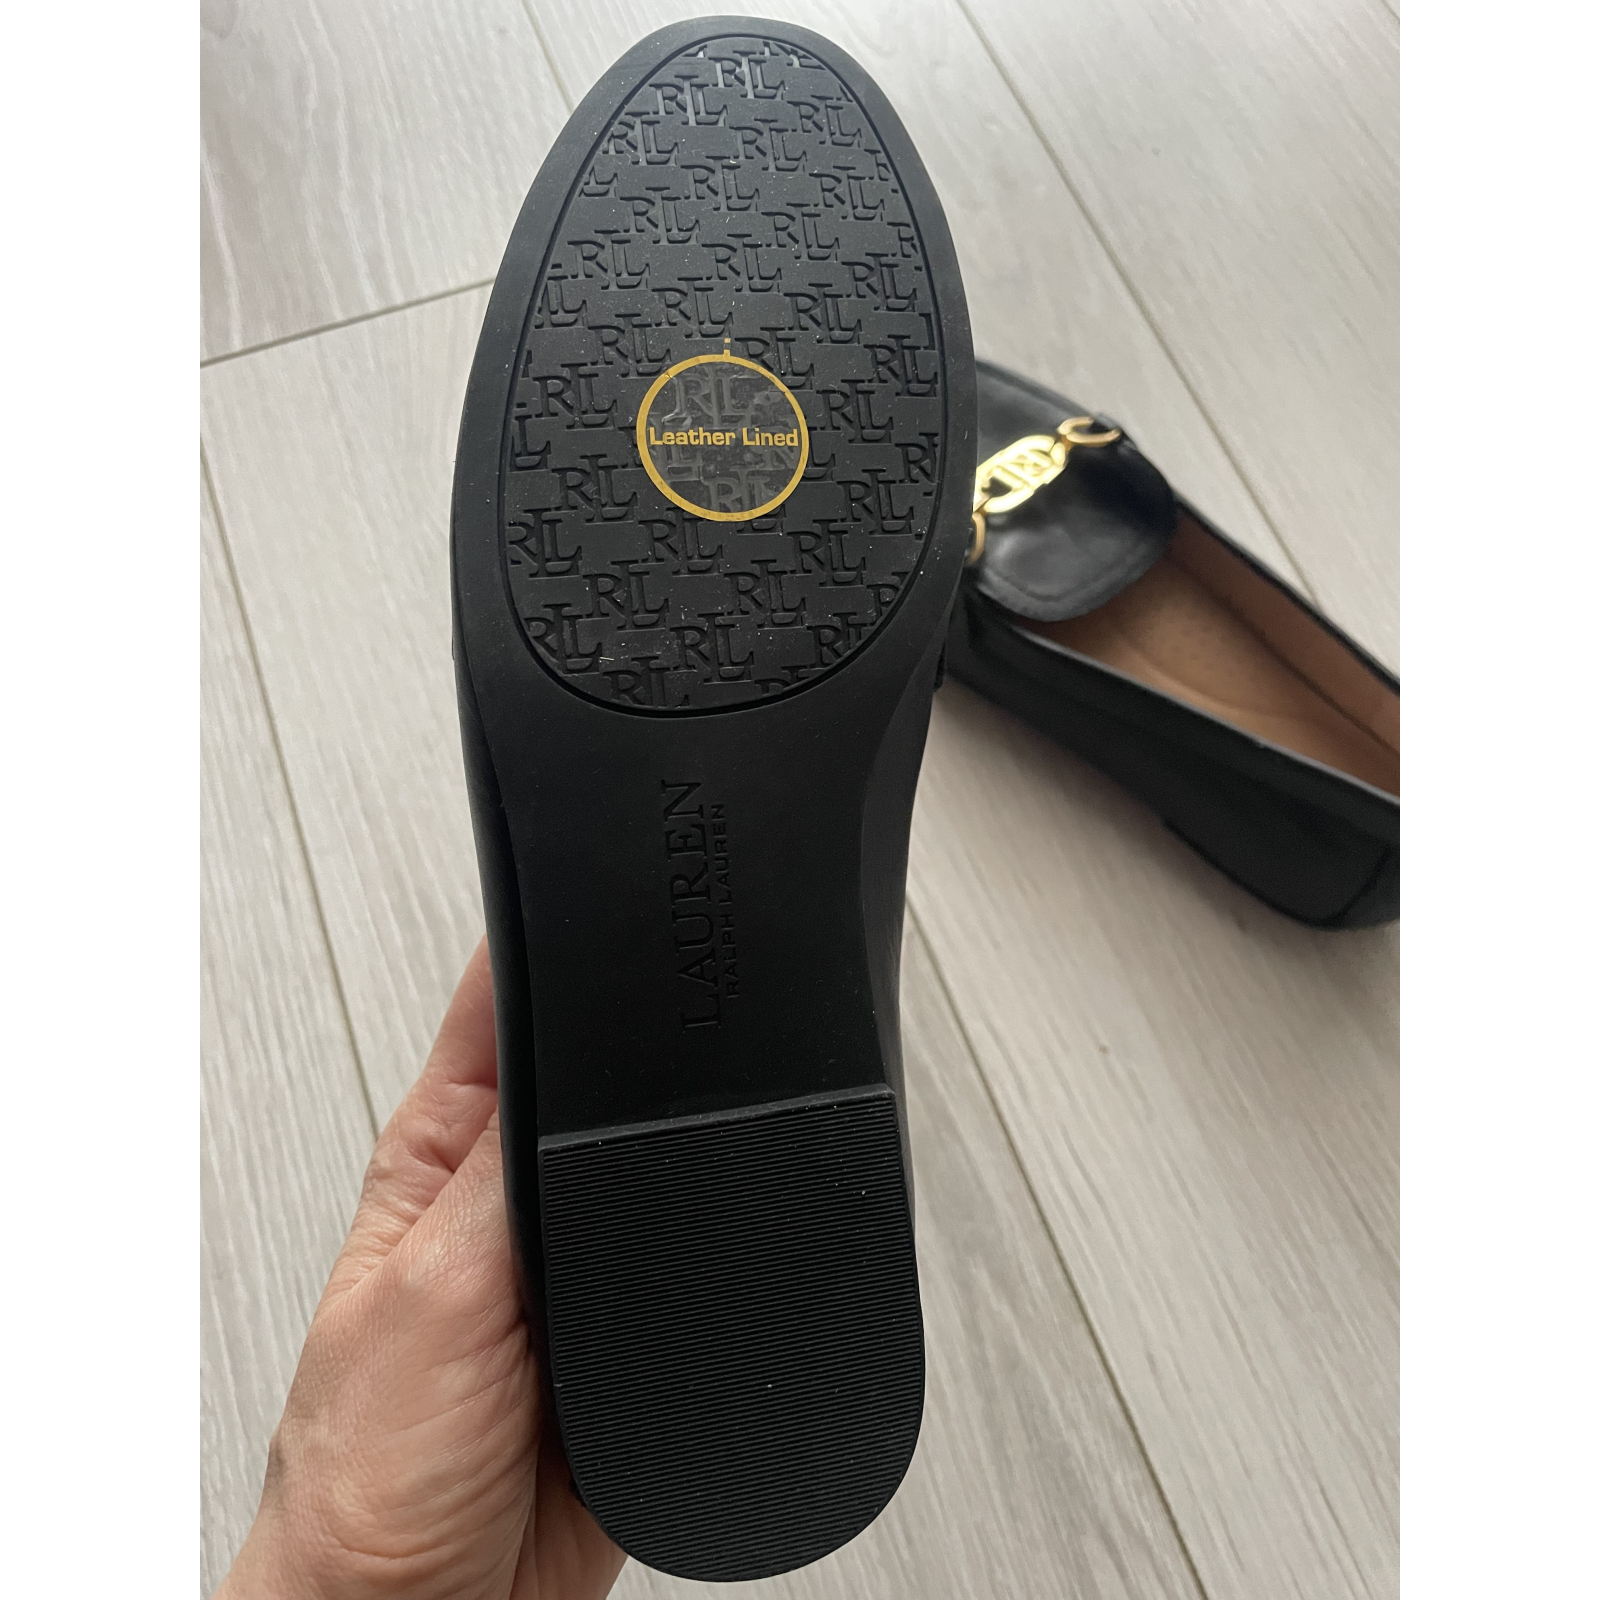 Nowe buty Loafersy Lauren Ralph Lauren - 36